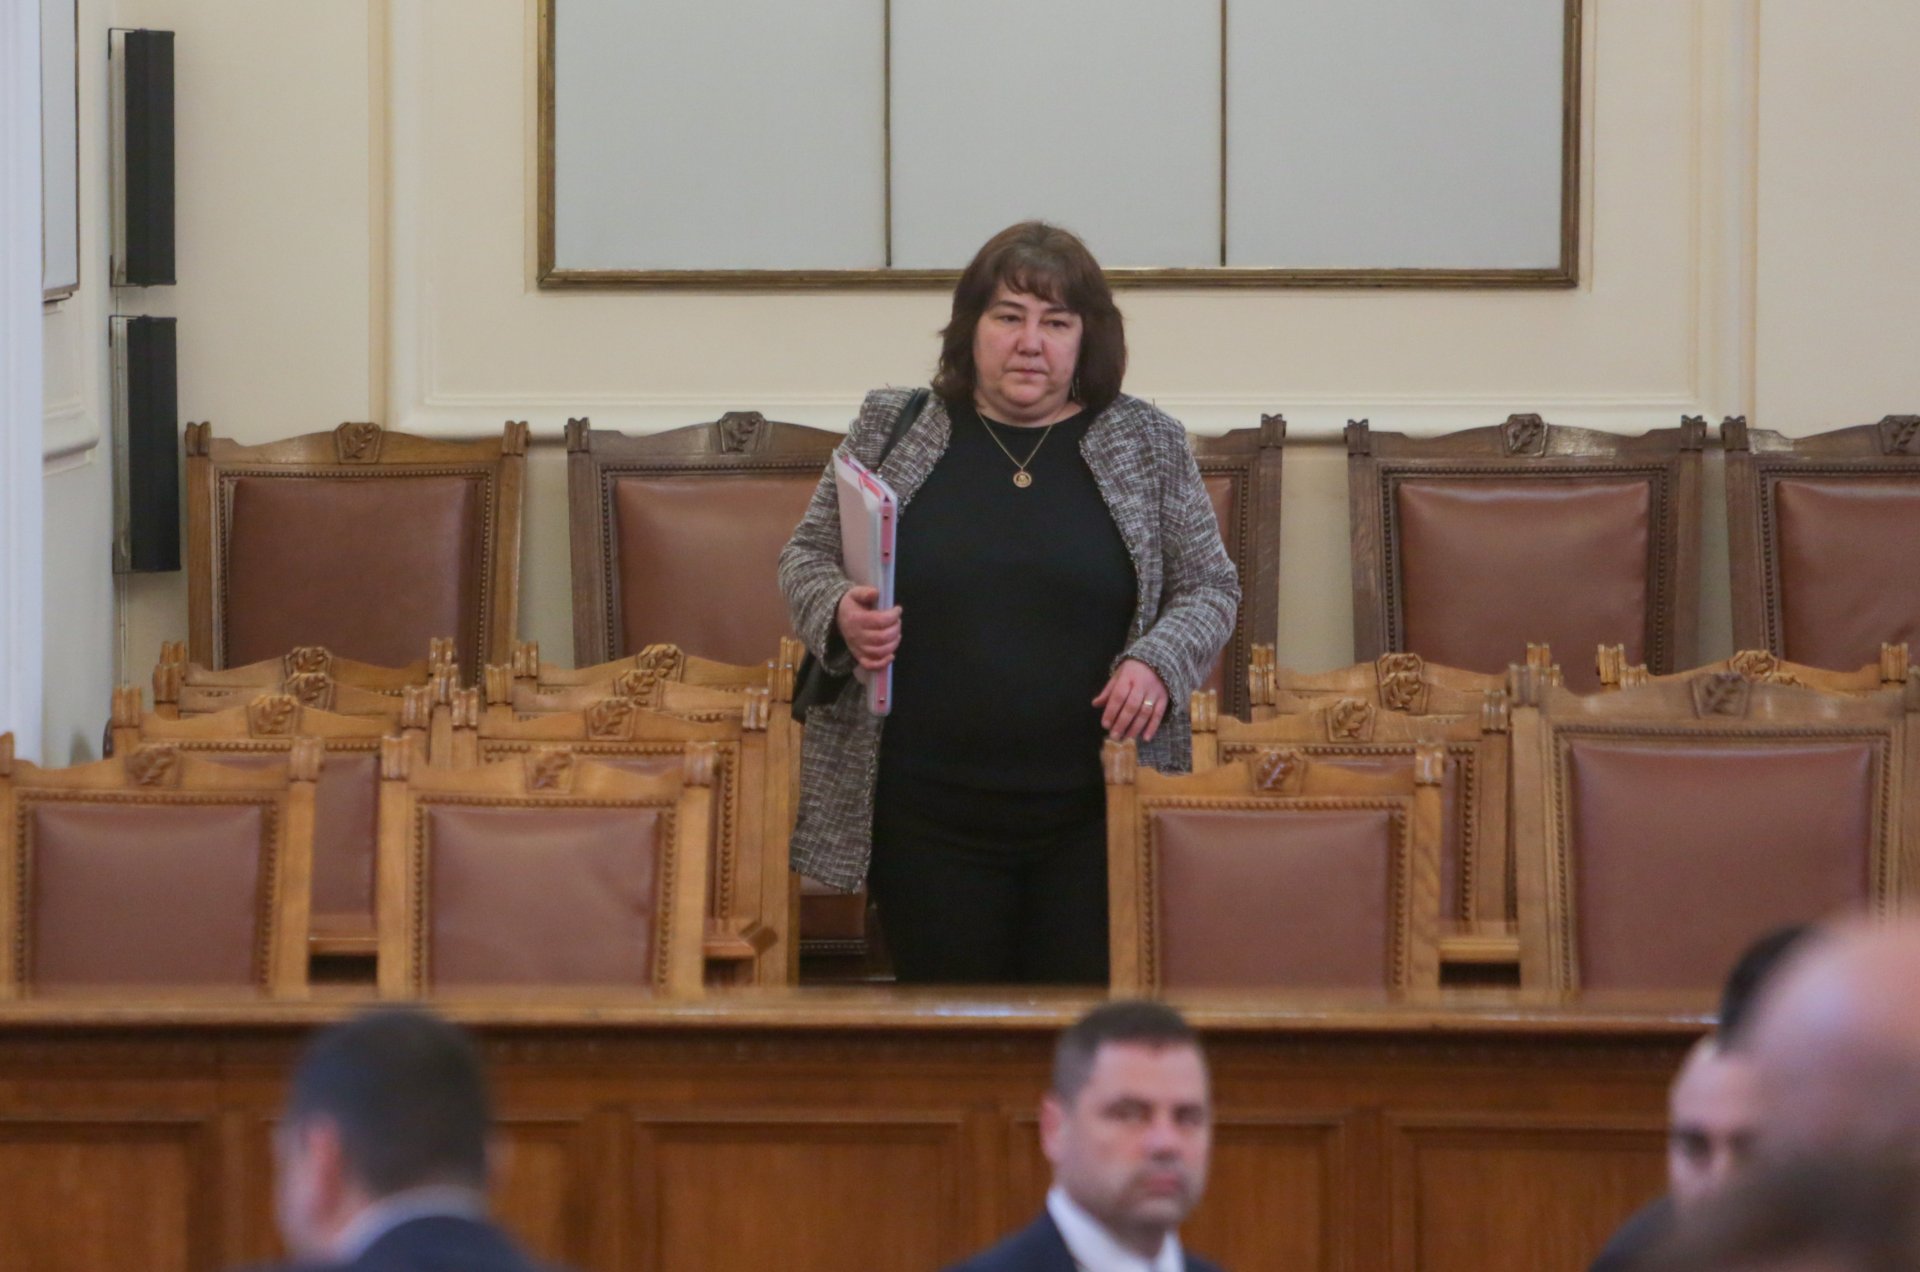 Росица Велкова, министър на финансите